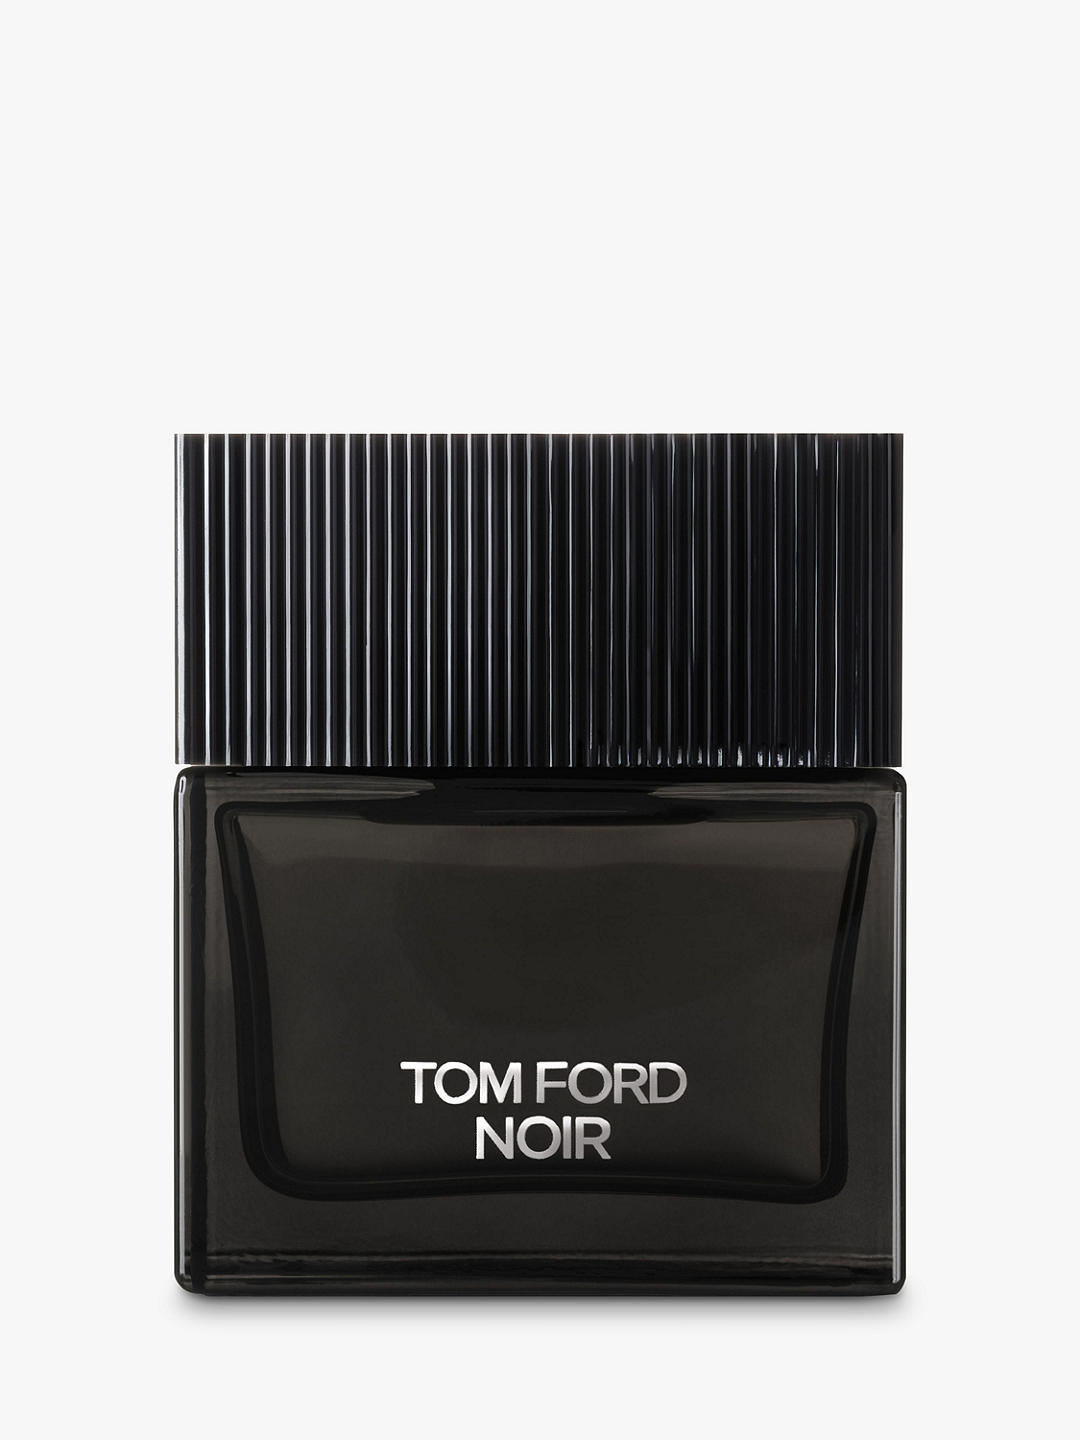 TOM FORD Noir Eau de Parfum, 100ml 1